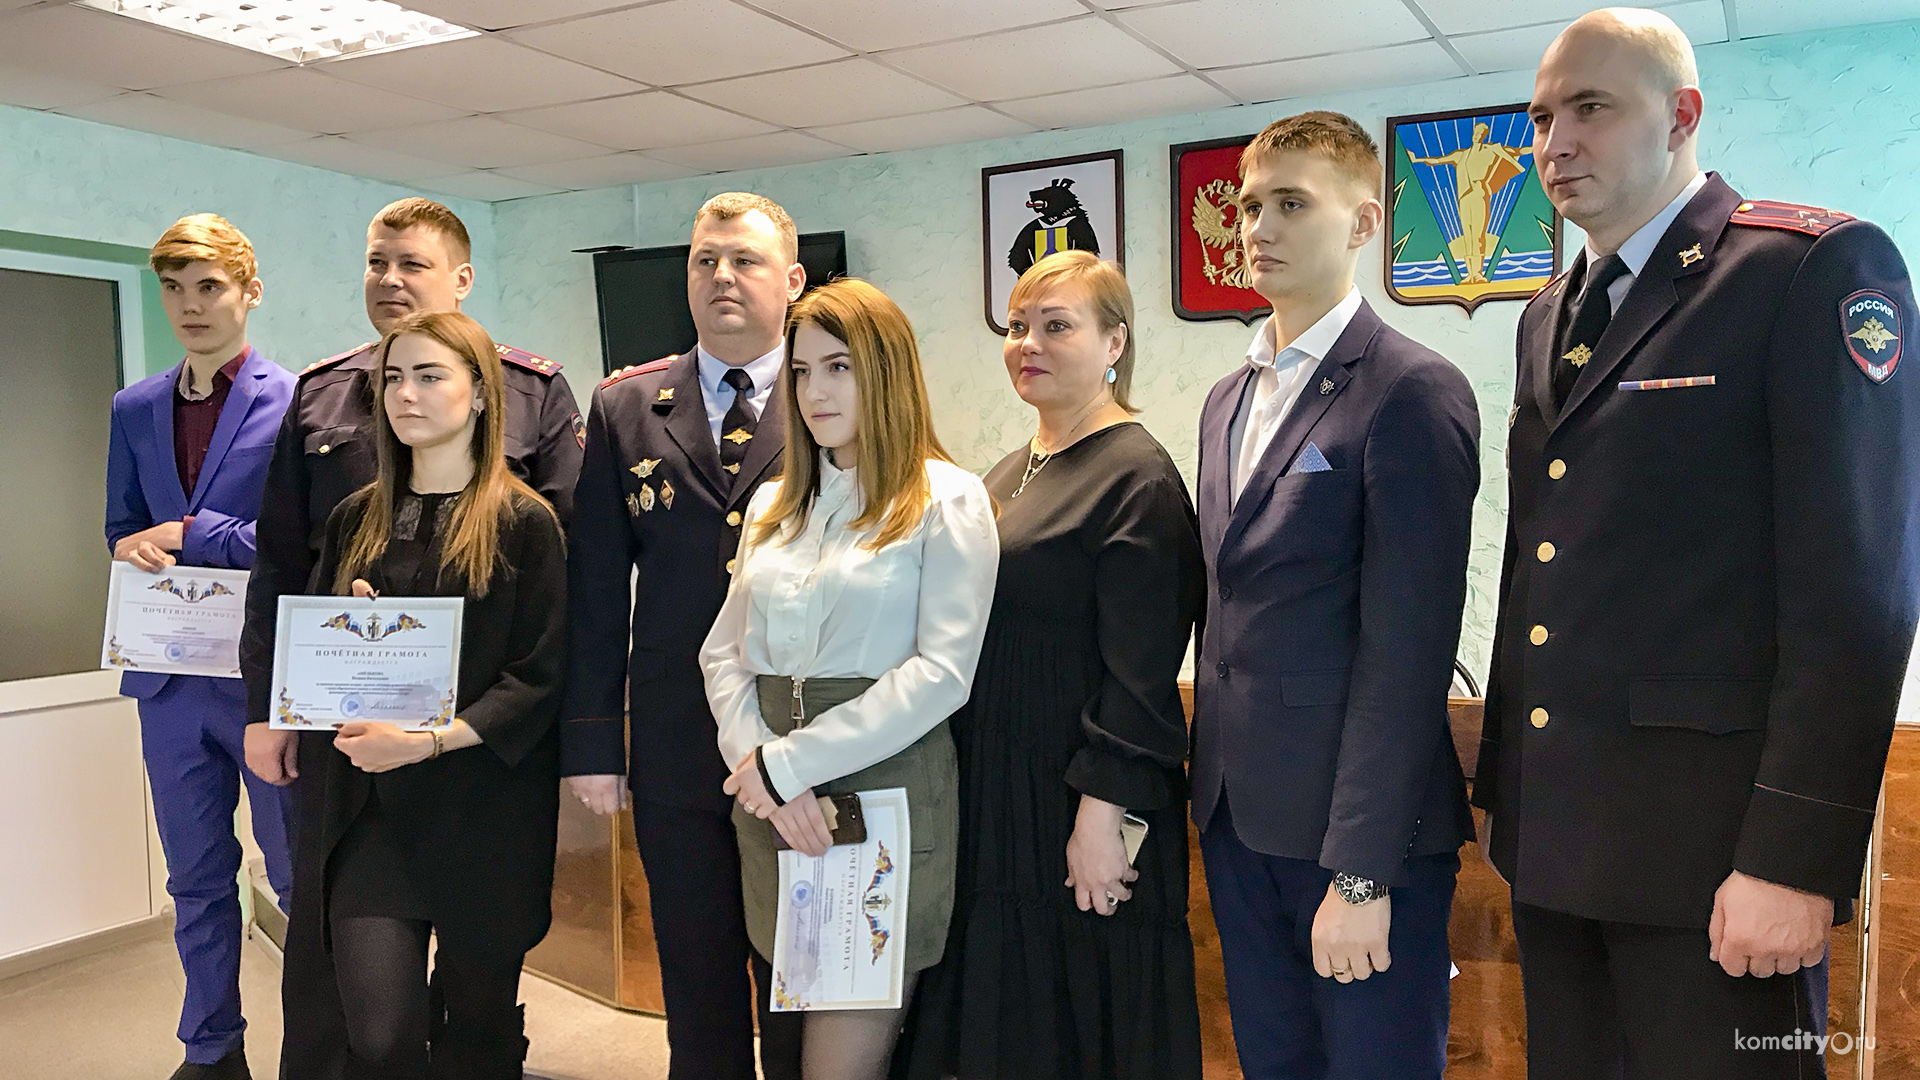 Дружинники и активные граждане получили благодарности от полиции Комсомольска-на-Амуре